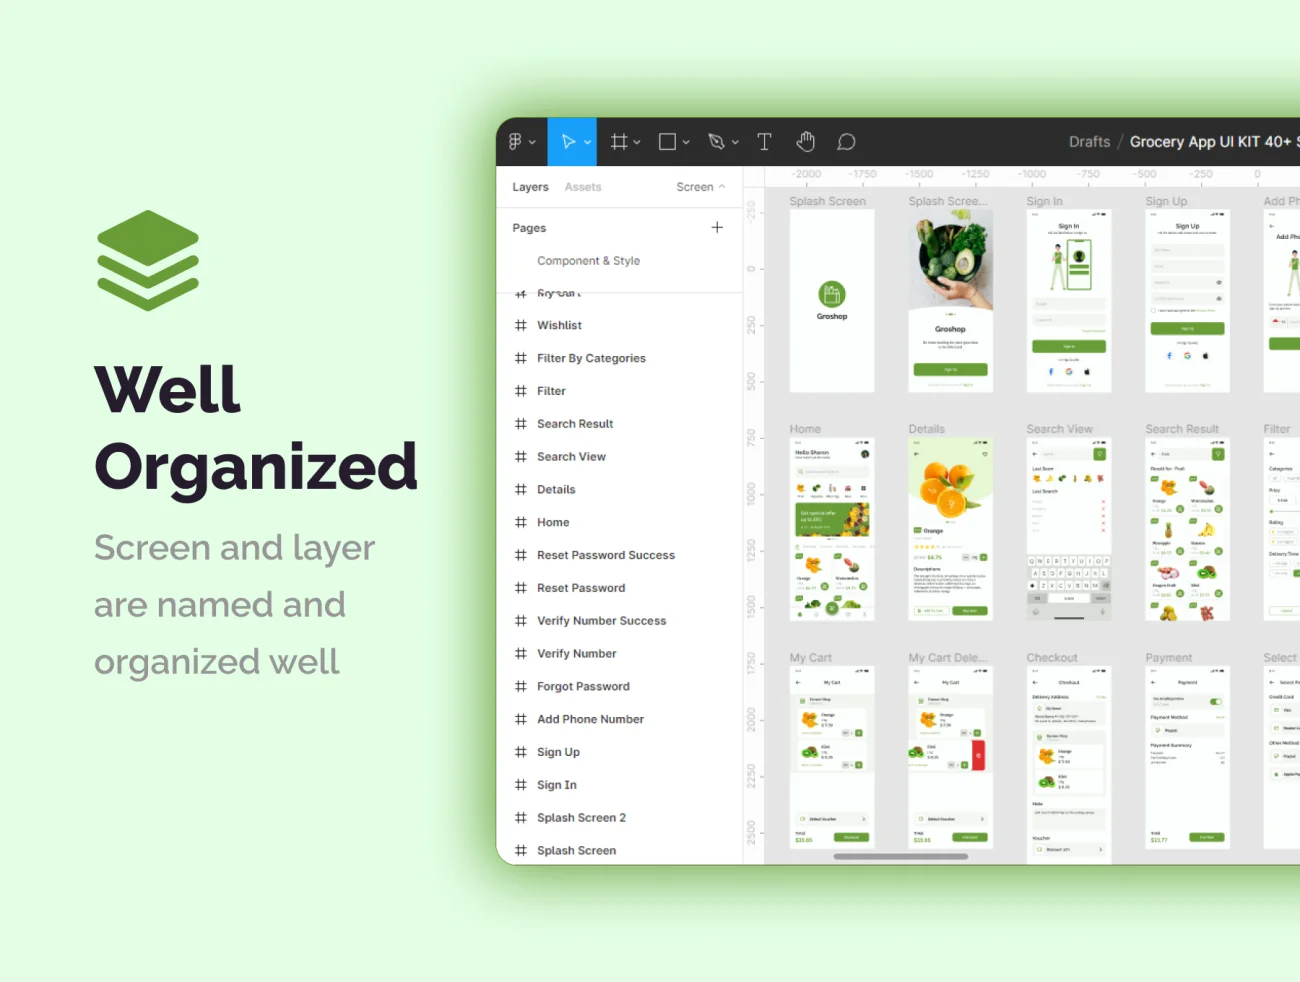 50屏生活百货蔬菜水果采购应用UI设计套件 Groshop – Groceries App UI Kit .figma插图13